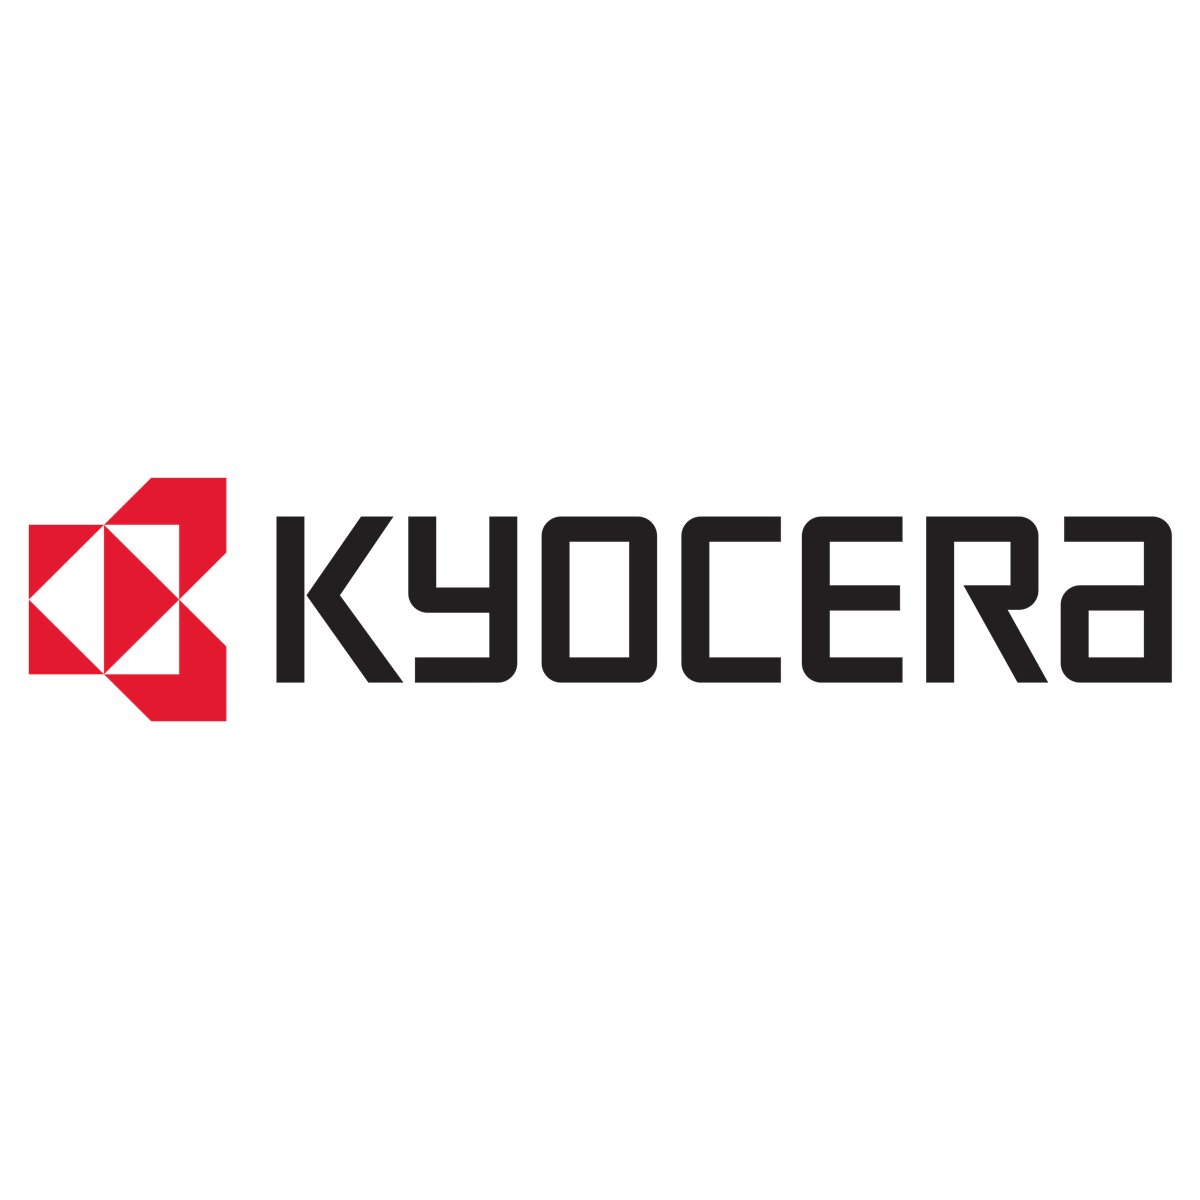 Kyocera PCL BARCODE3 Virtual Edition